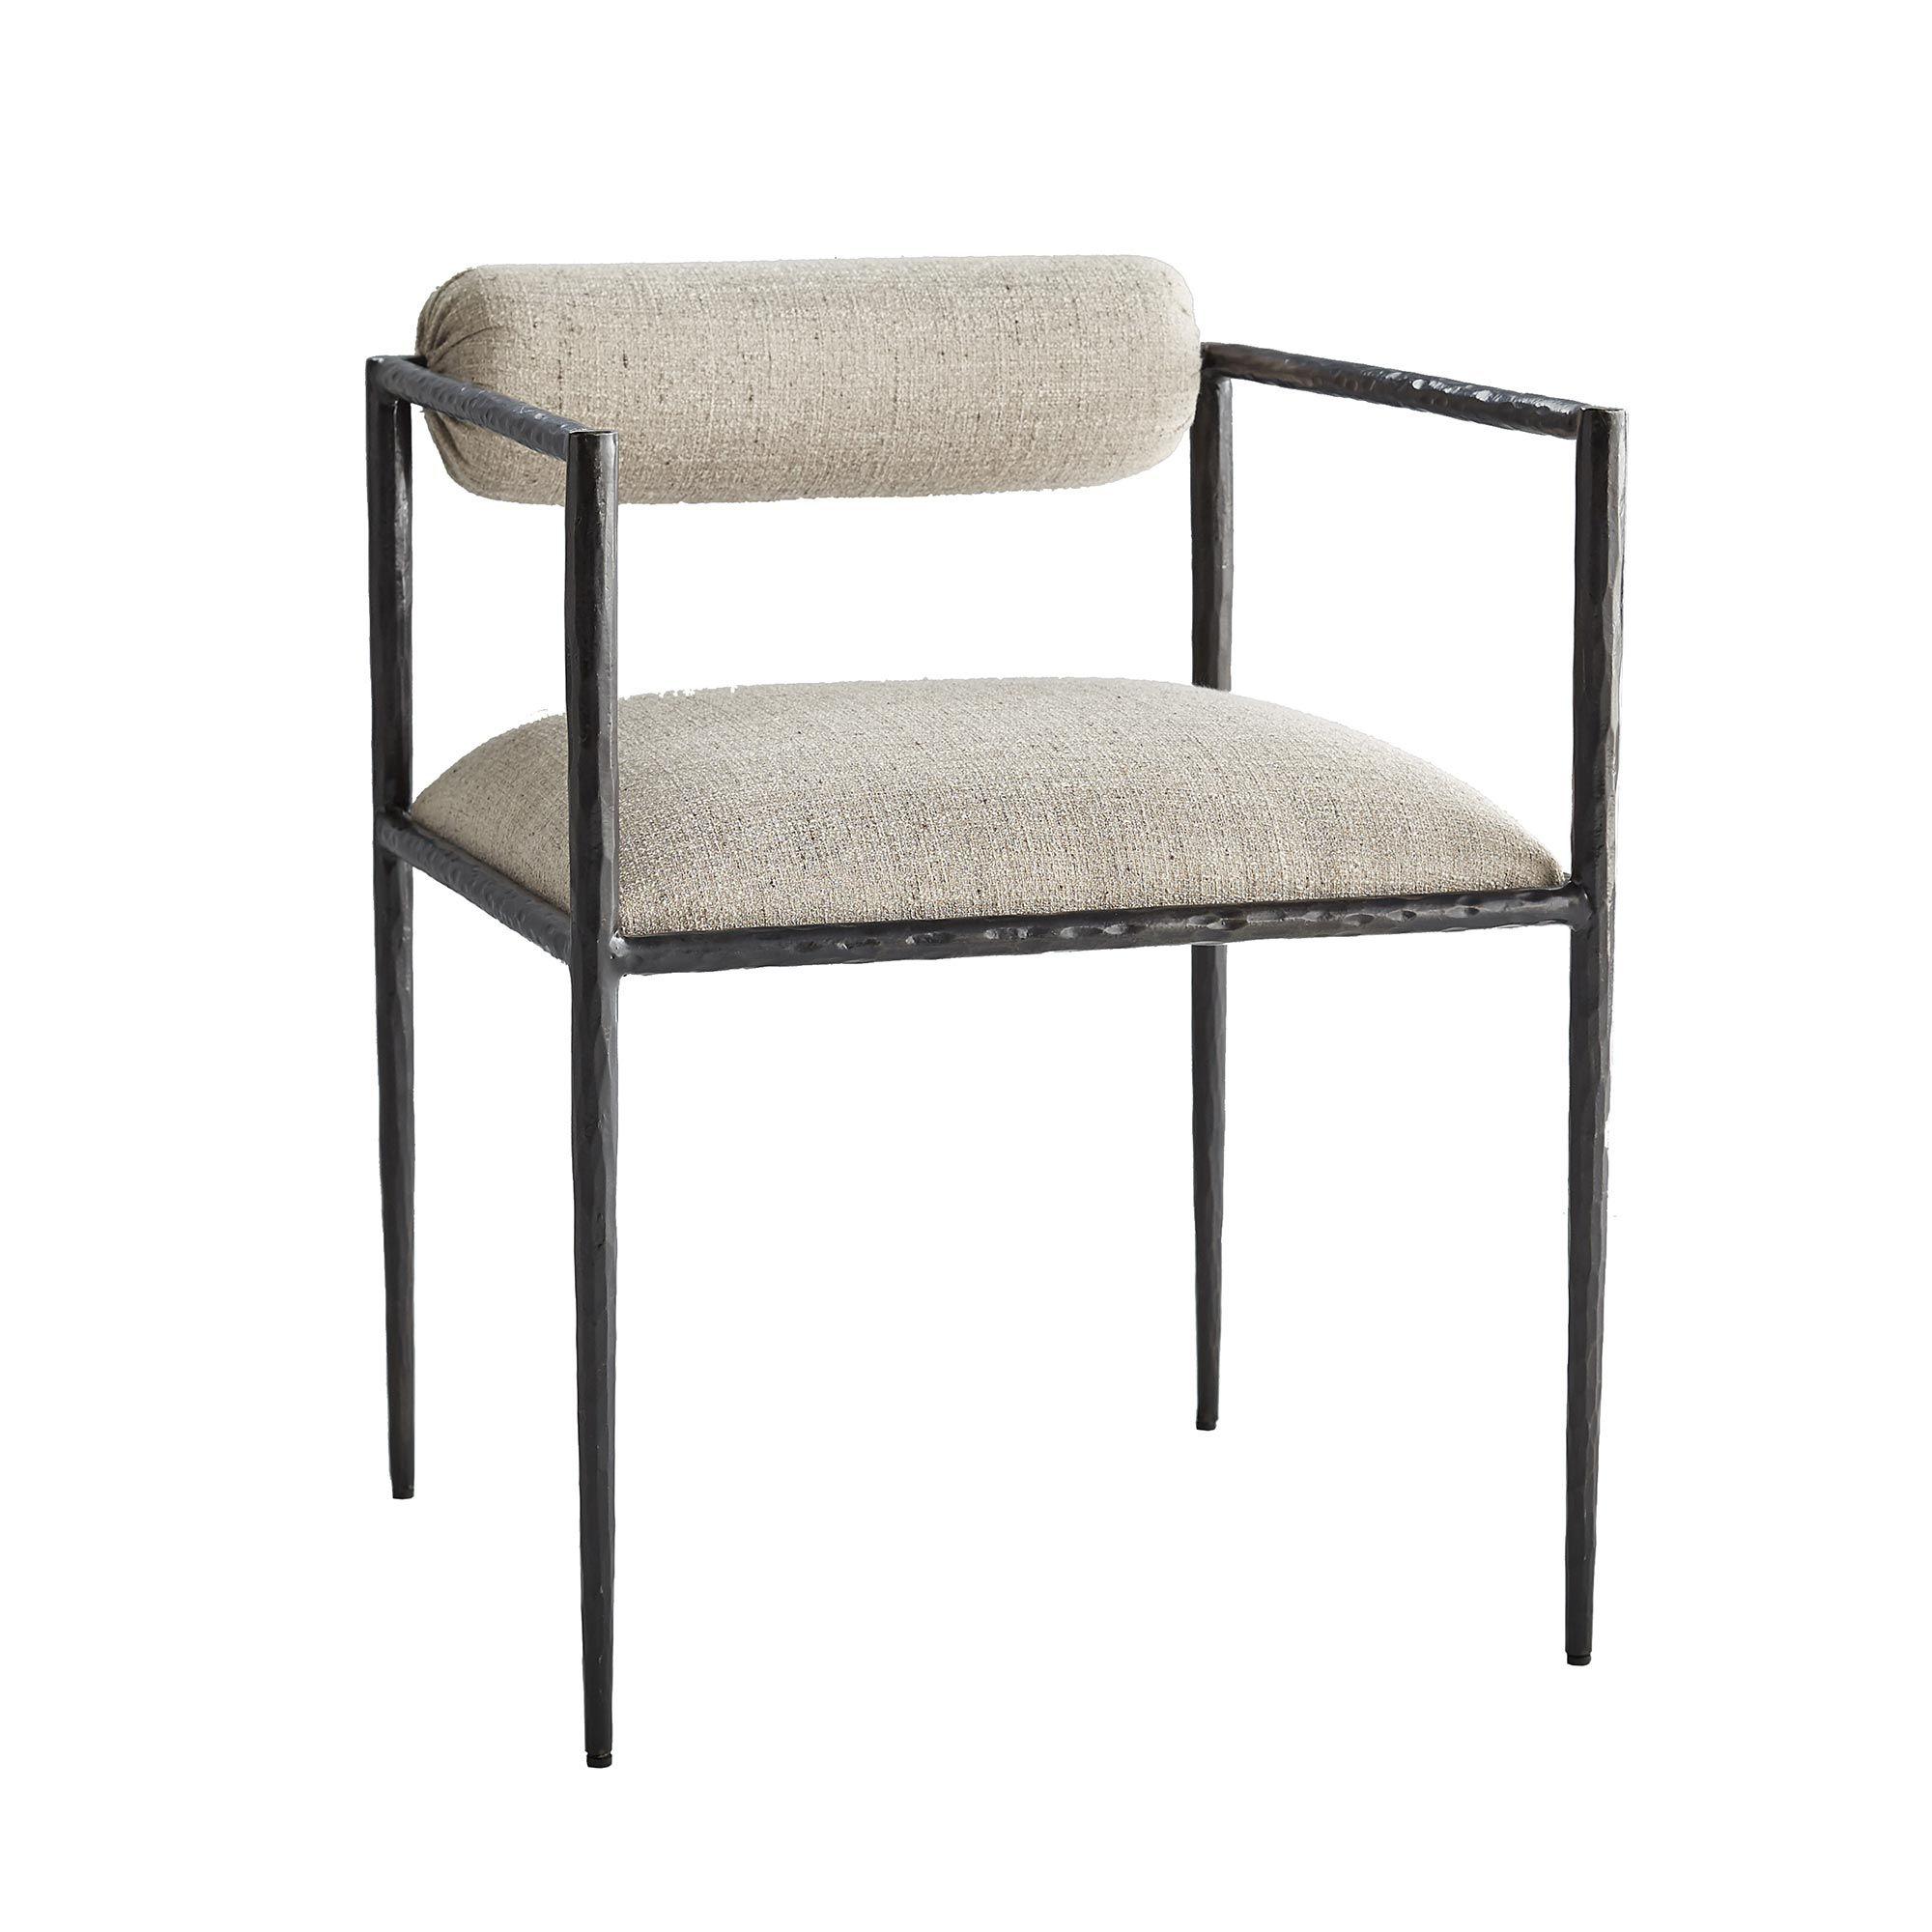 Купить Стул с подлокотником Barbana Chair Pewter Texture в интернет-магазине roooms.ru